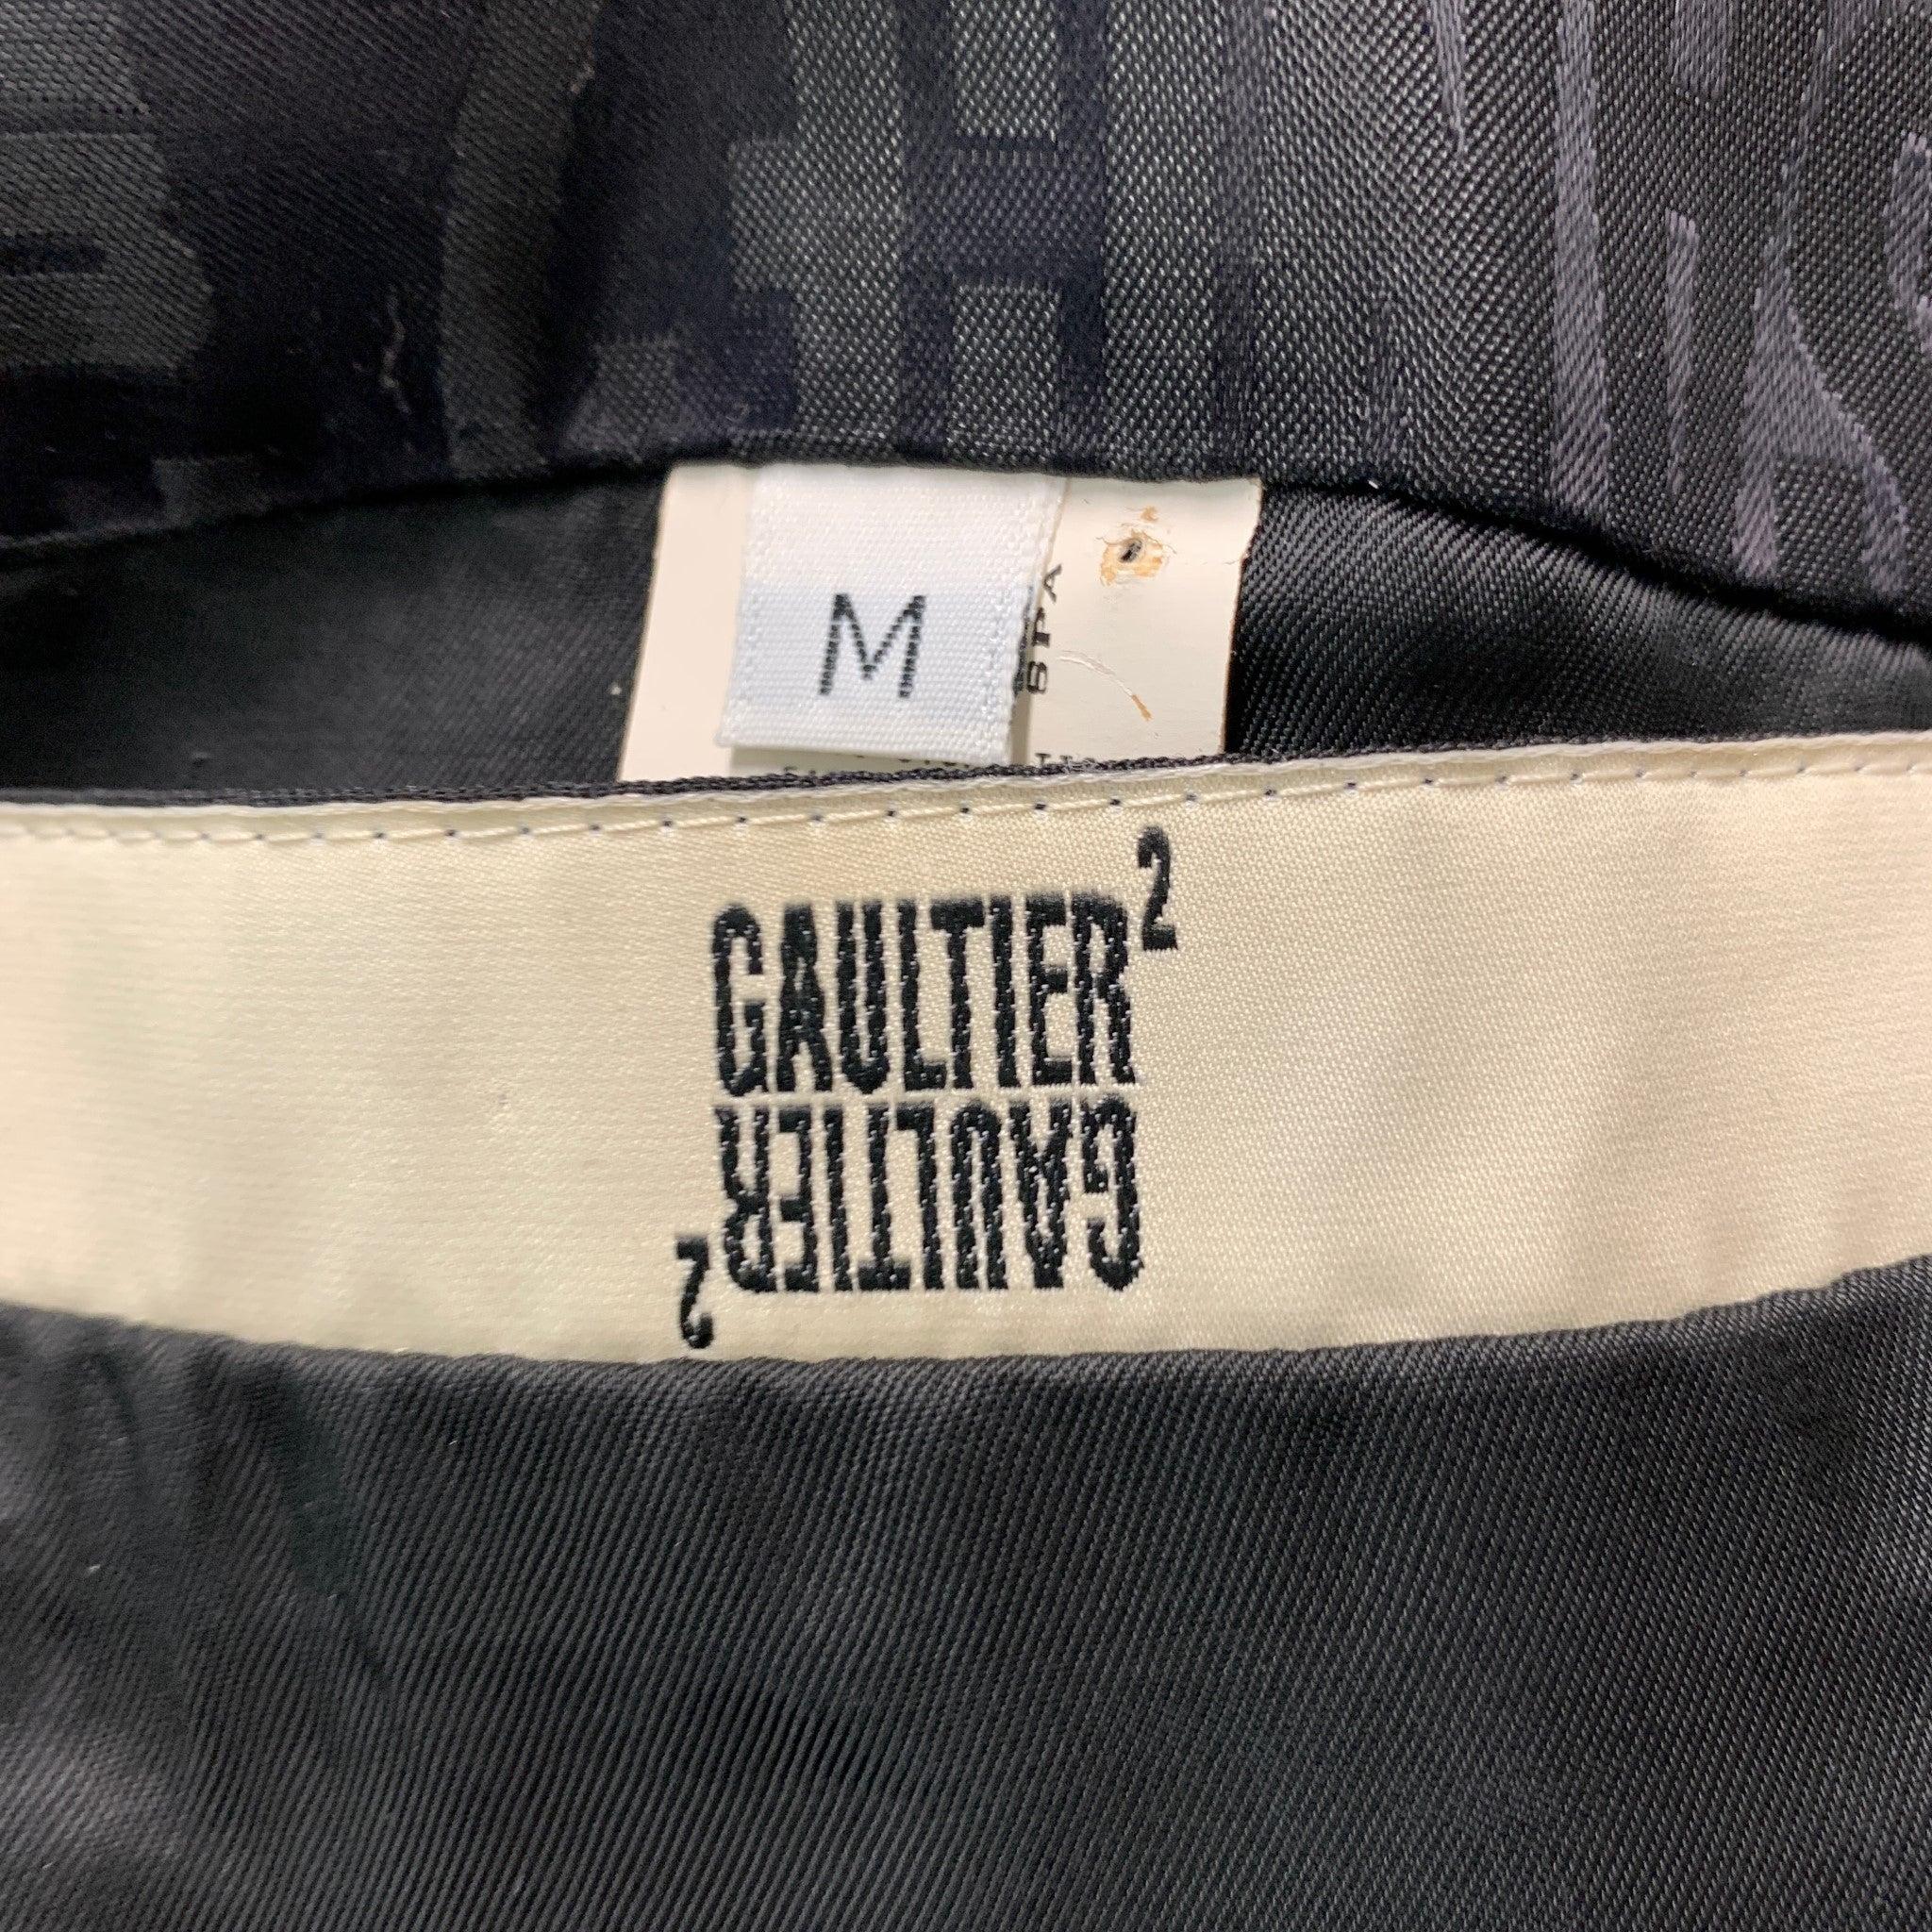 GAULTIER2 JEAN PAUL GAULTIER Size 38 Black Wool Silk Shawl Collar Sport Coat For Sale 1